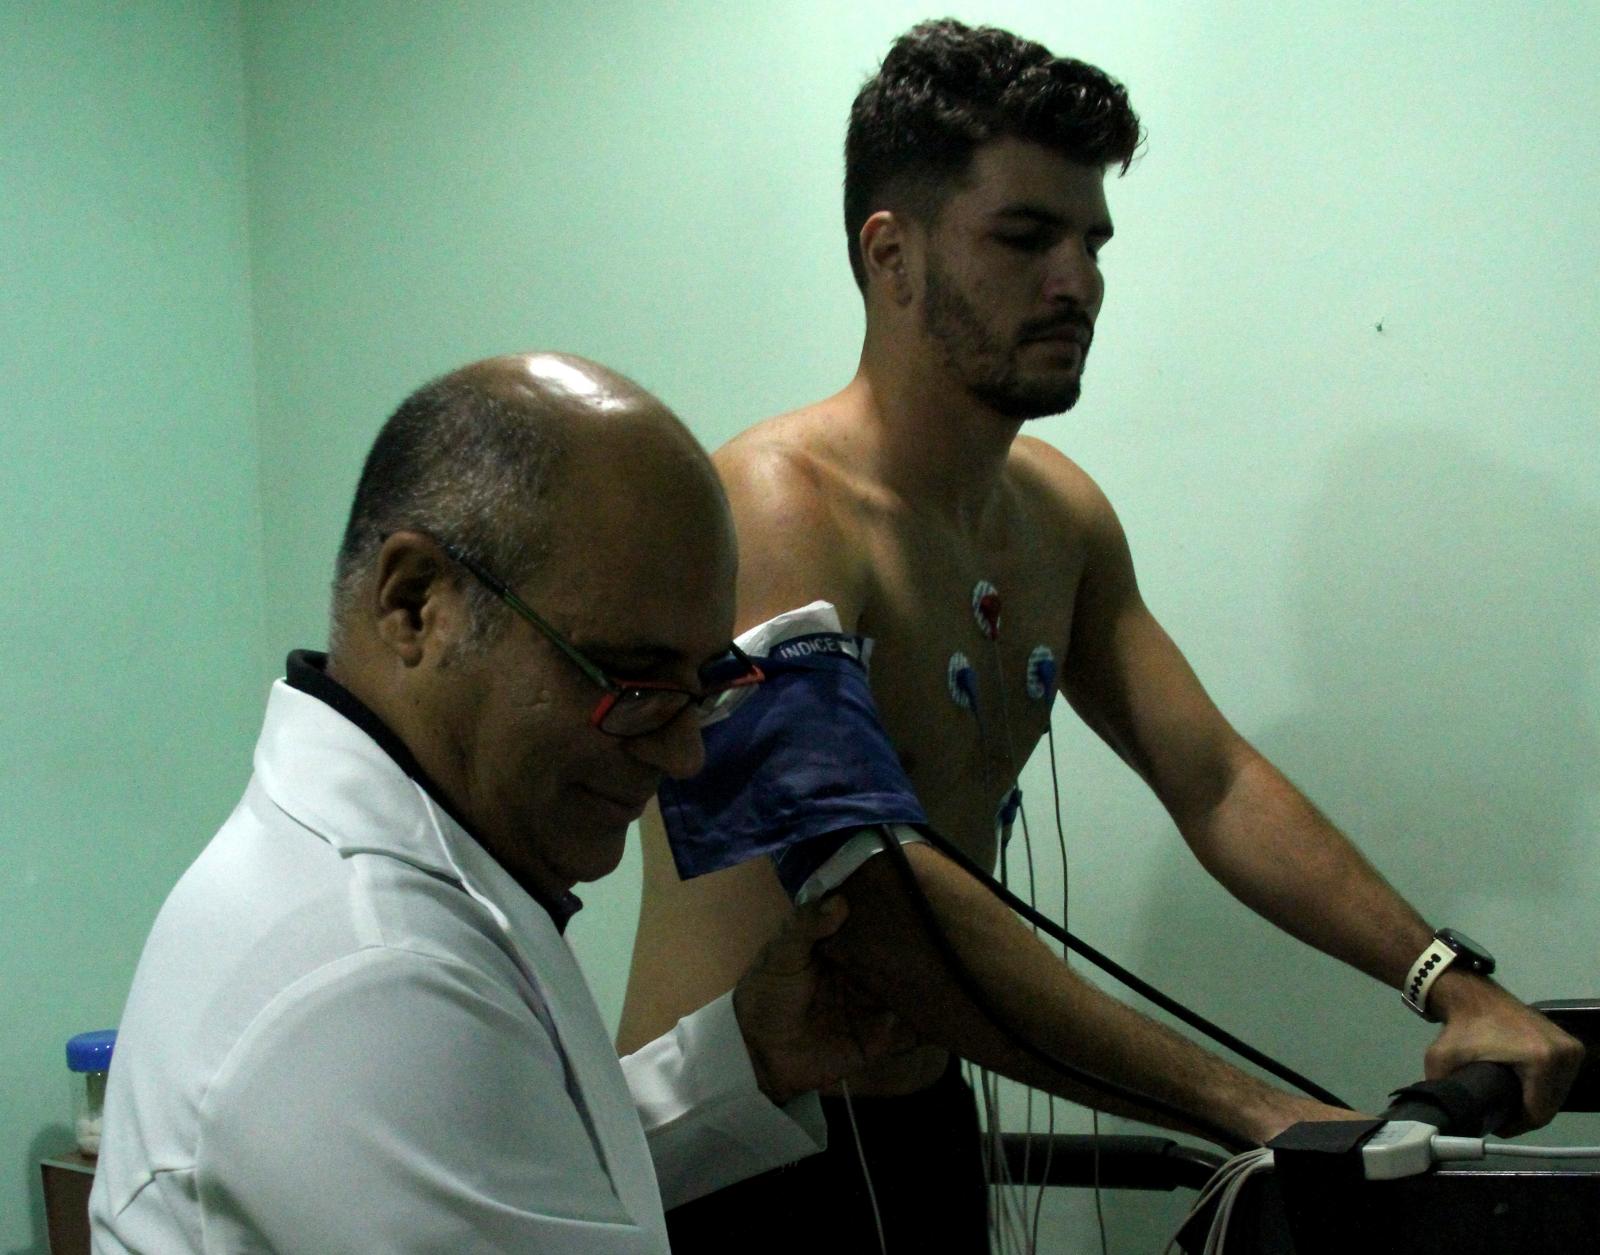 Os jogadores do Nova Iguaçu F. C. estiveram em nossa clínica antecipando seus exames médicos visando o campeonato Carioca-2018. Segue a notícia postada no site do NIFC: